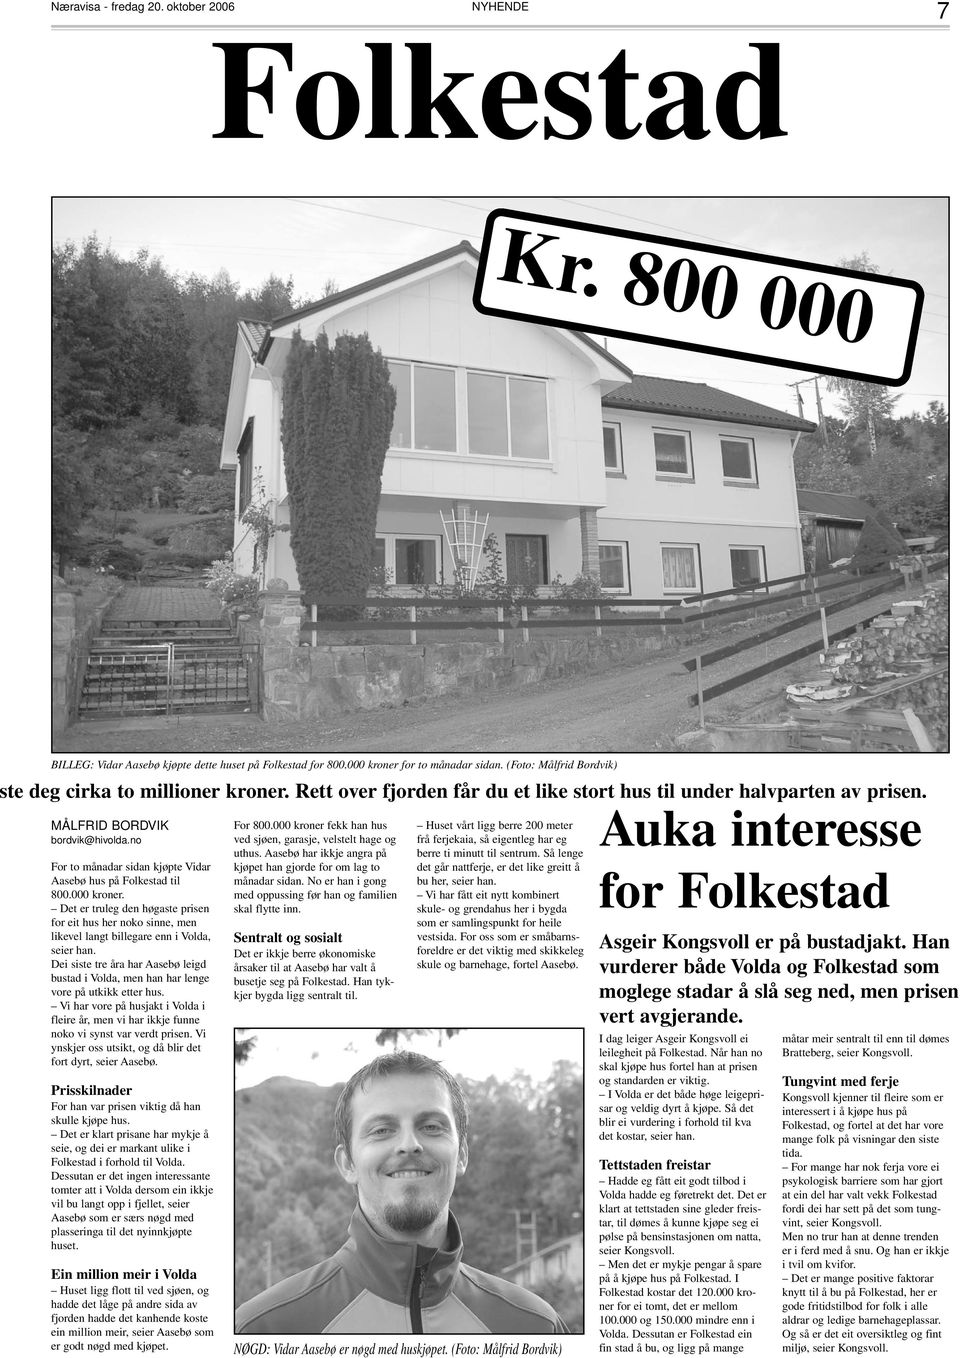 no For to månadar sidan kjøpte Vidar Aasebø hus på Folkestad til 800.000 kroner. Det er truleg den høgaste prisen for eit hus her noko sinne, men likevel langt billegare enn i Volda, seier han.